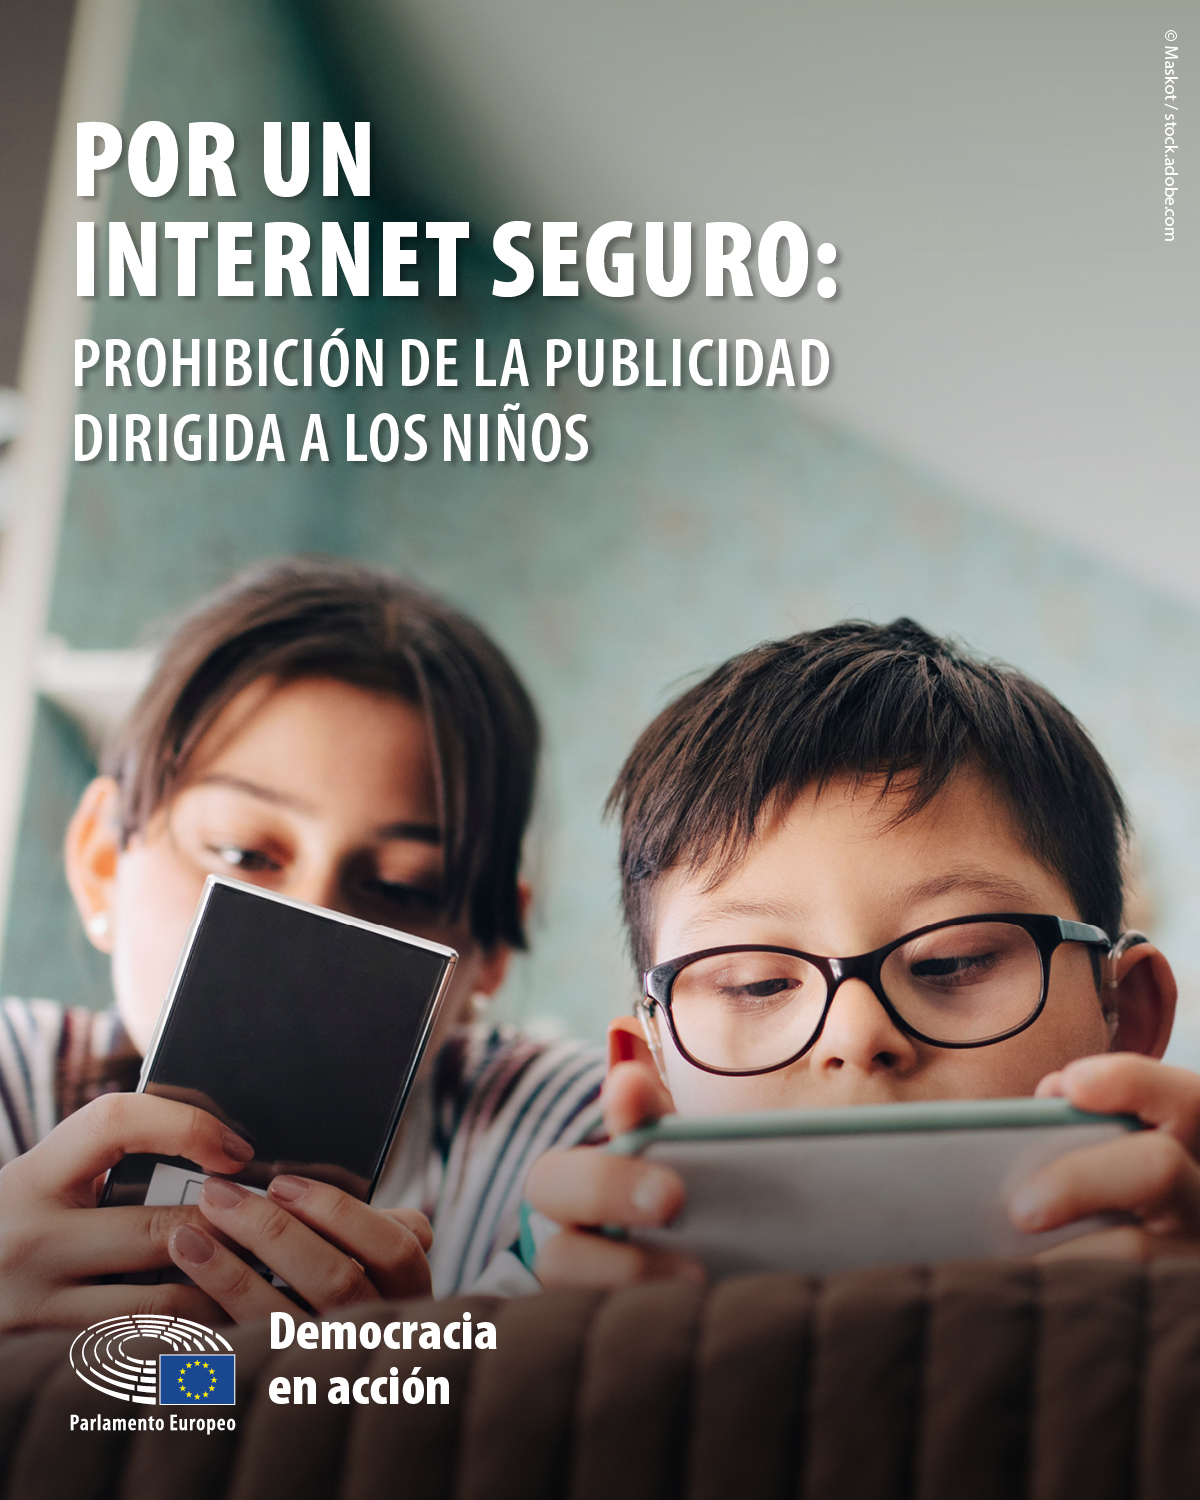 Safe Internet - 4:5